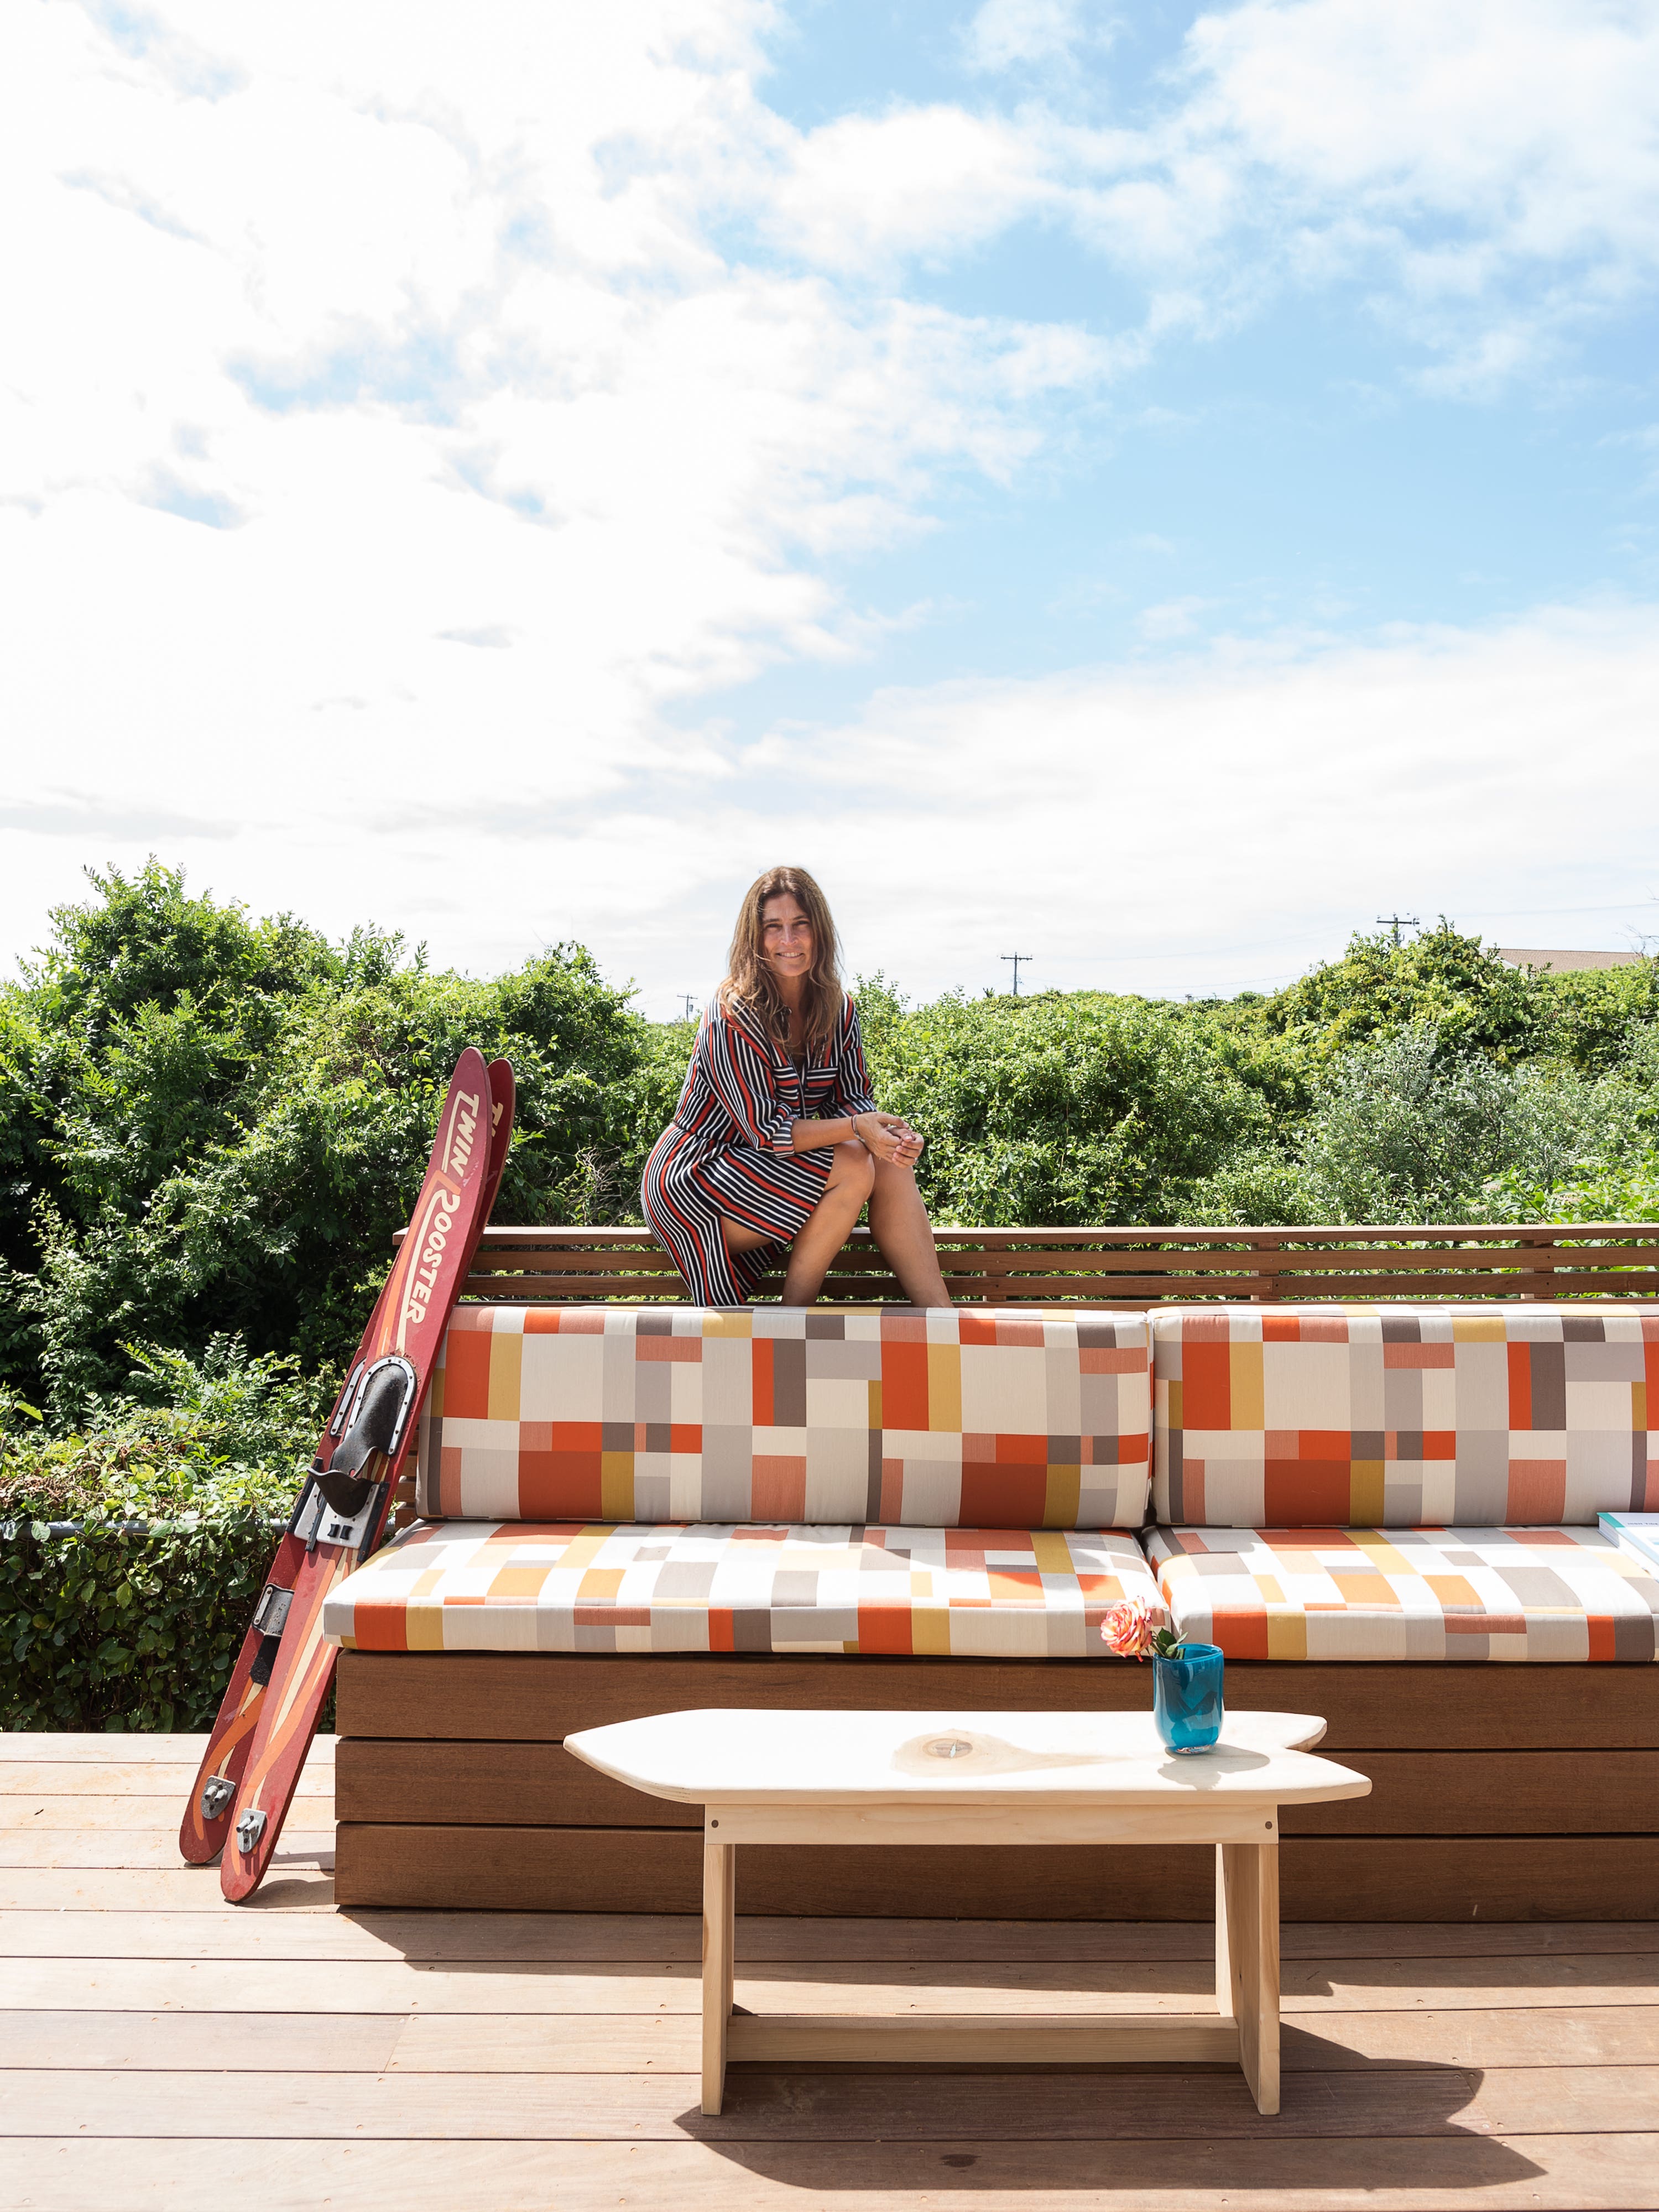 The Novogratz Transformed a Montauk Mobile Home Into a Chic Surf Shack